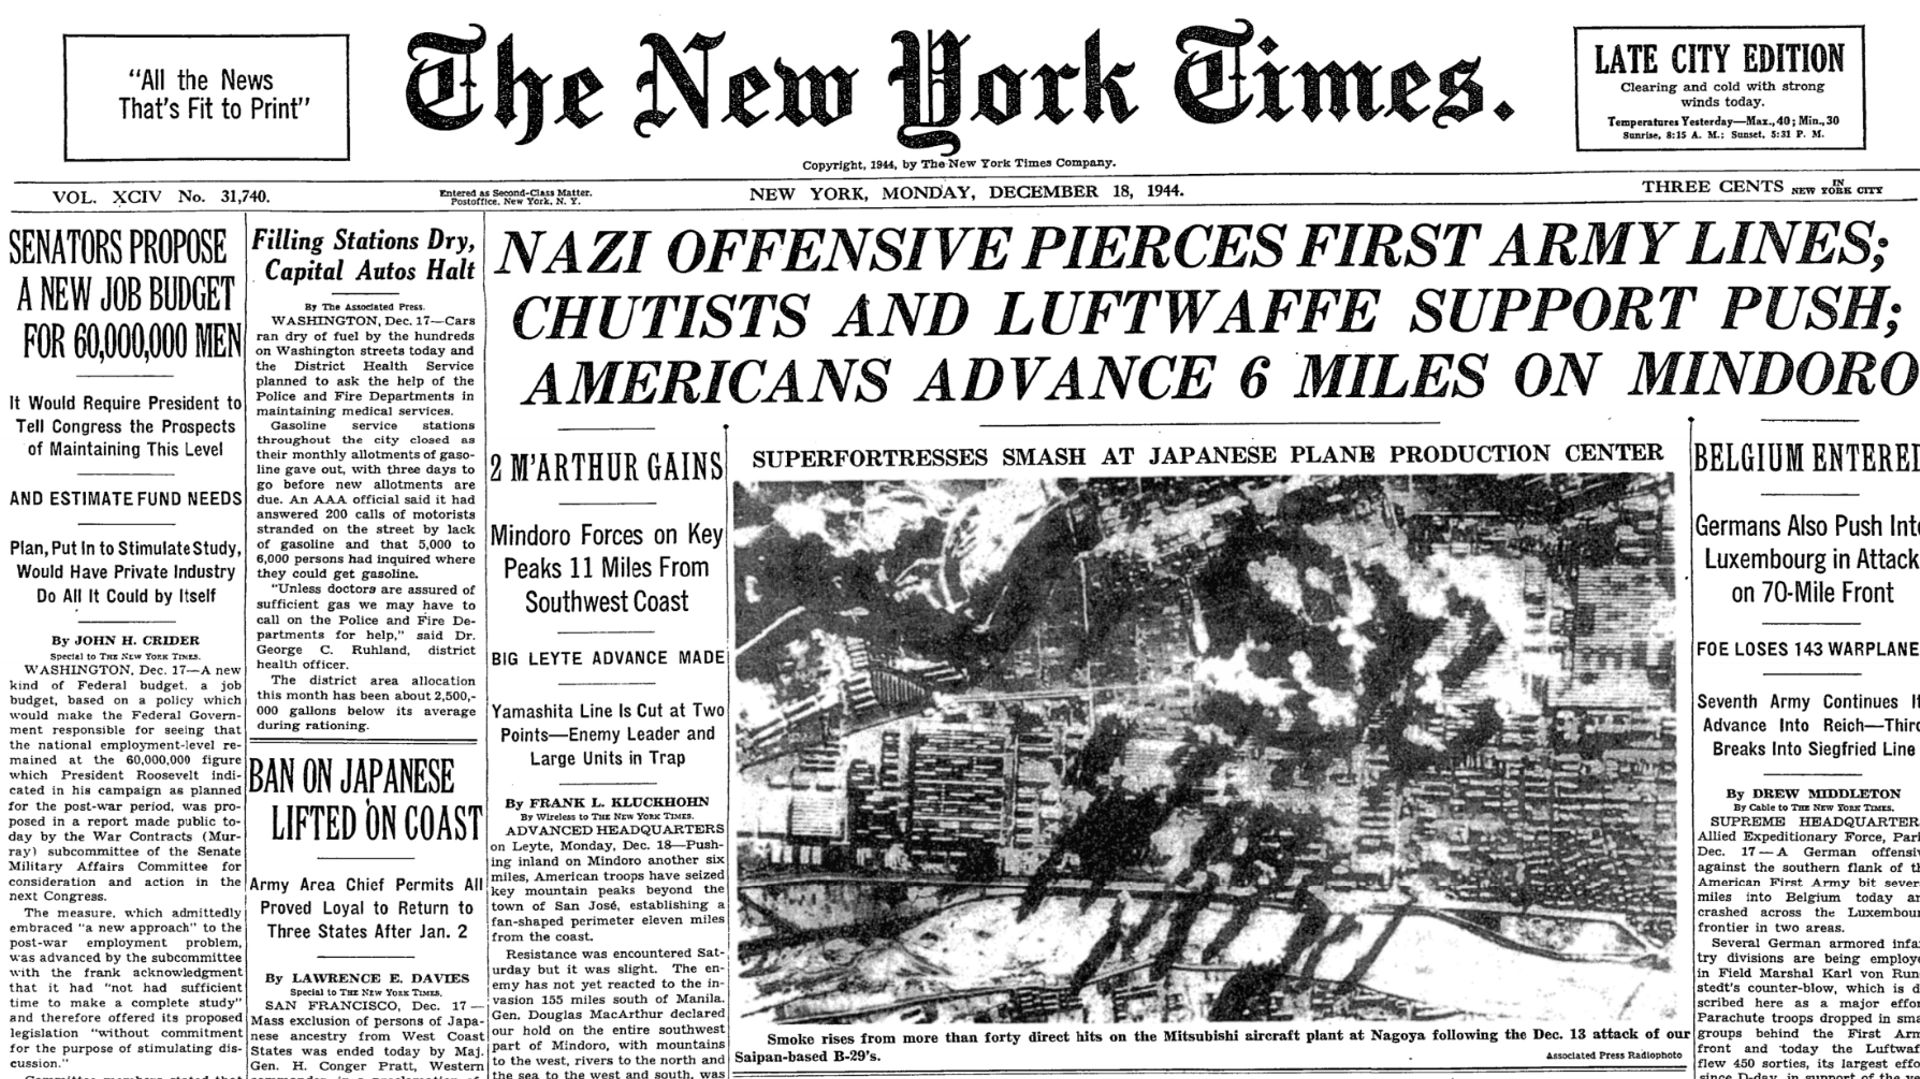 La presse américaine suit de près cette offensive des Ardennes